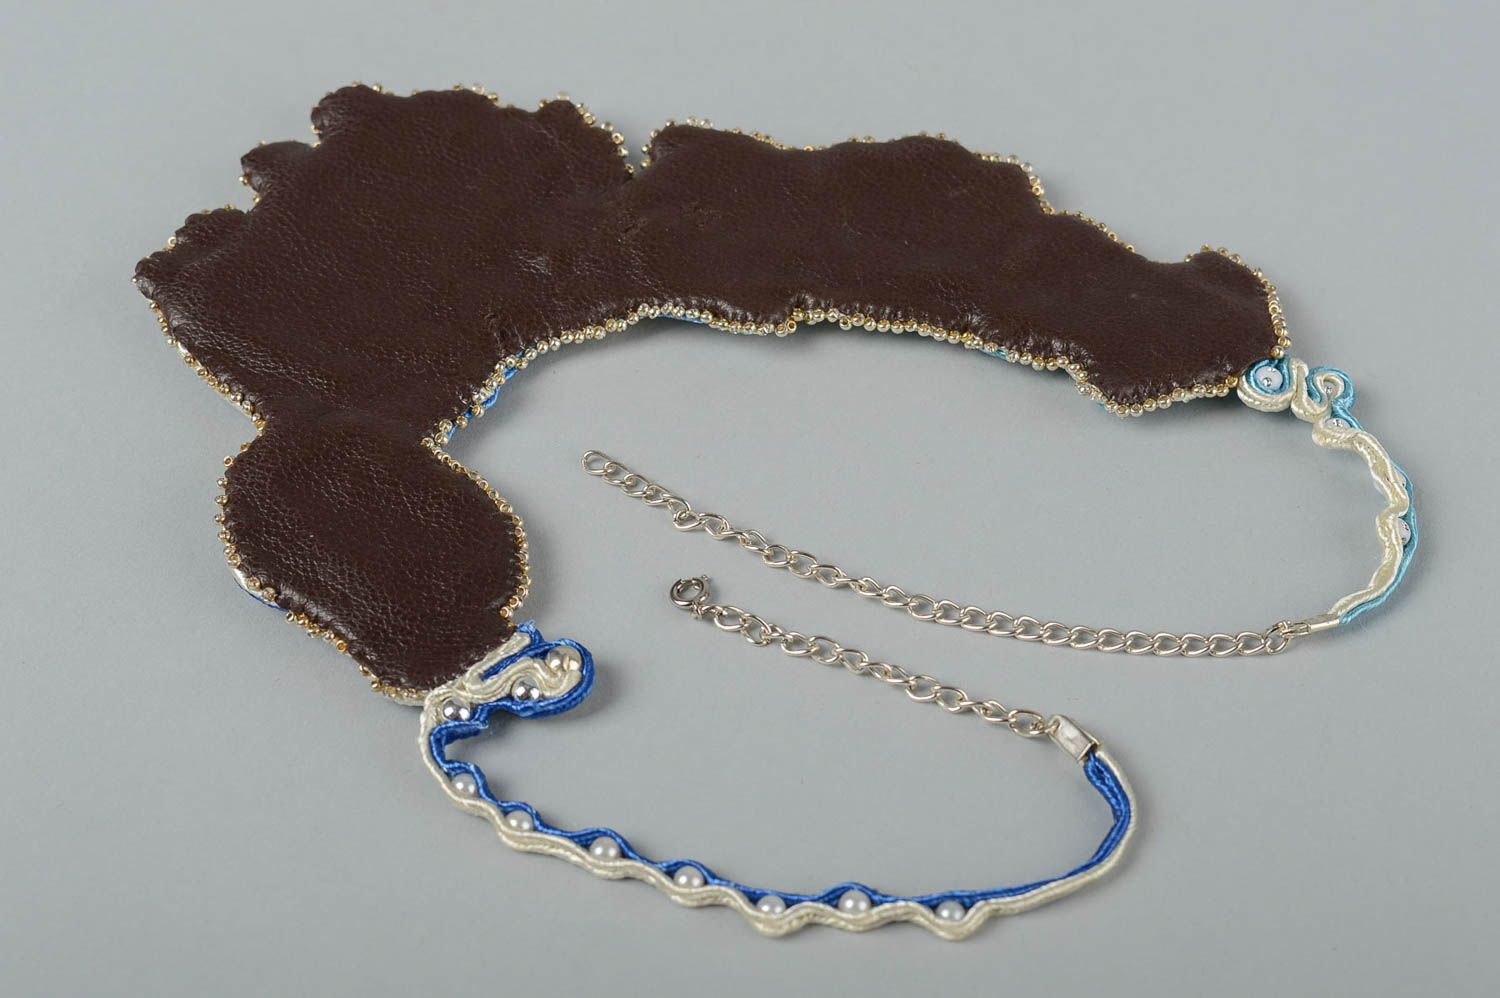 Колье сутажная вышивка хэнд мэйд вышитое ожерелье сутажное колье синее  фото 4